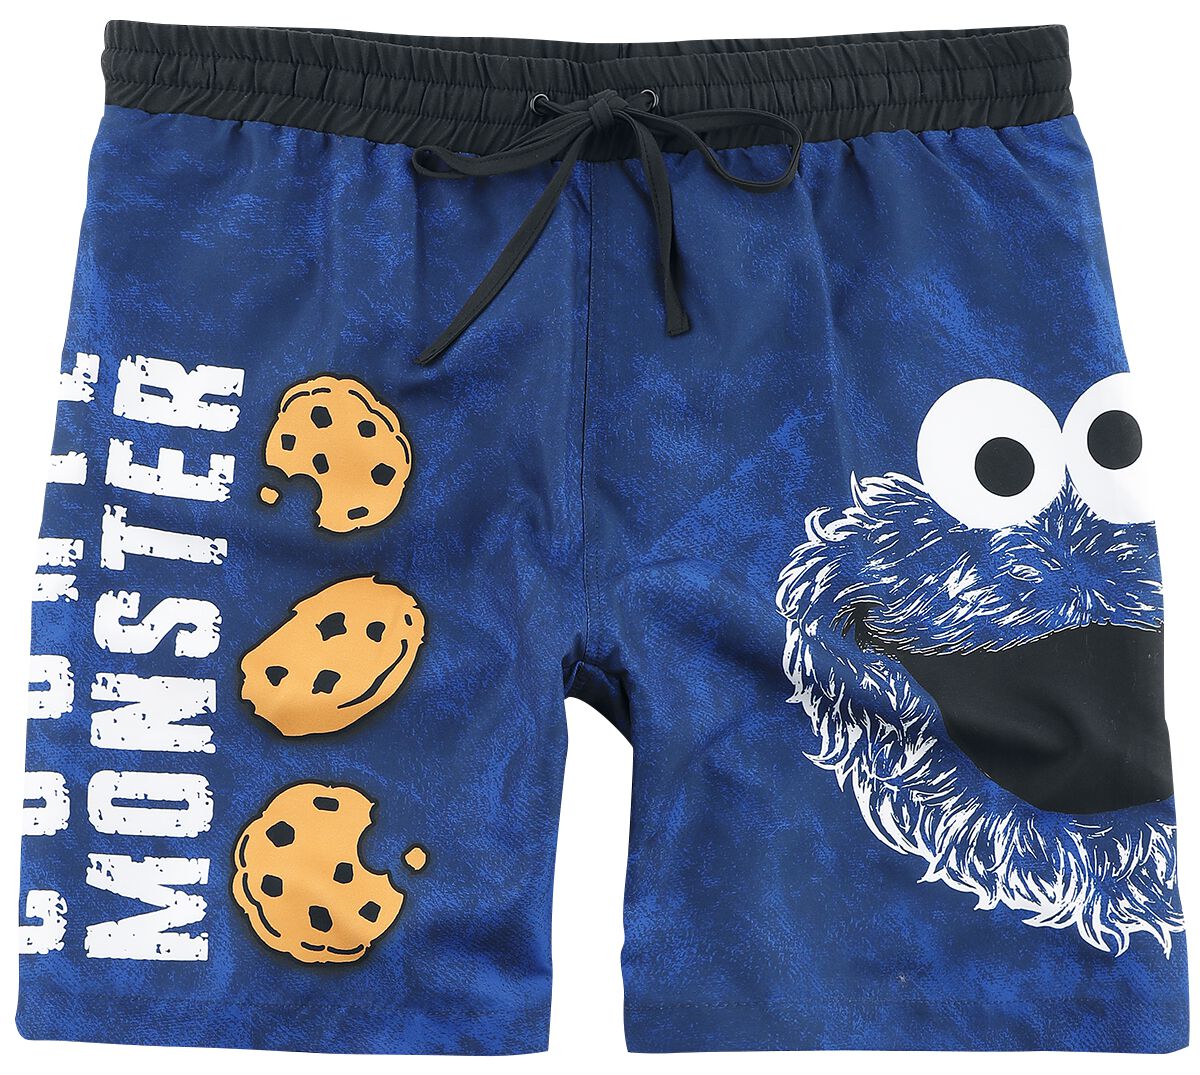 Sesamstraße Badeshort - Cookie Monster - Face - M bis 3XL - für Männer - Größe 3XL - blau  - EMP exklusives Merchandise!